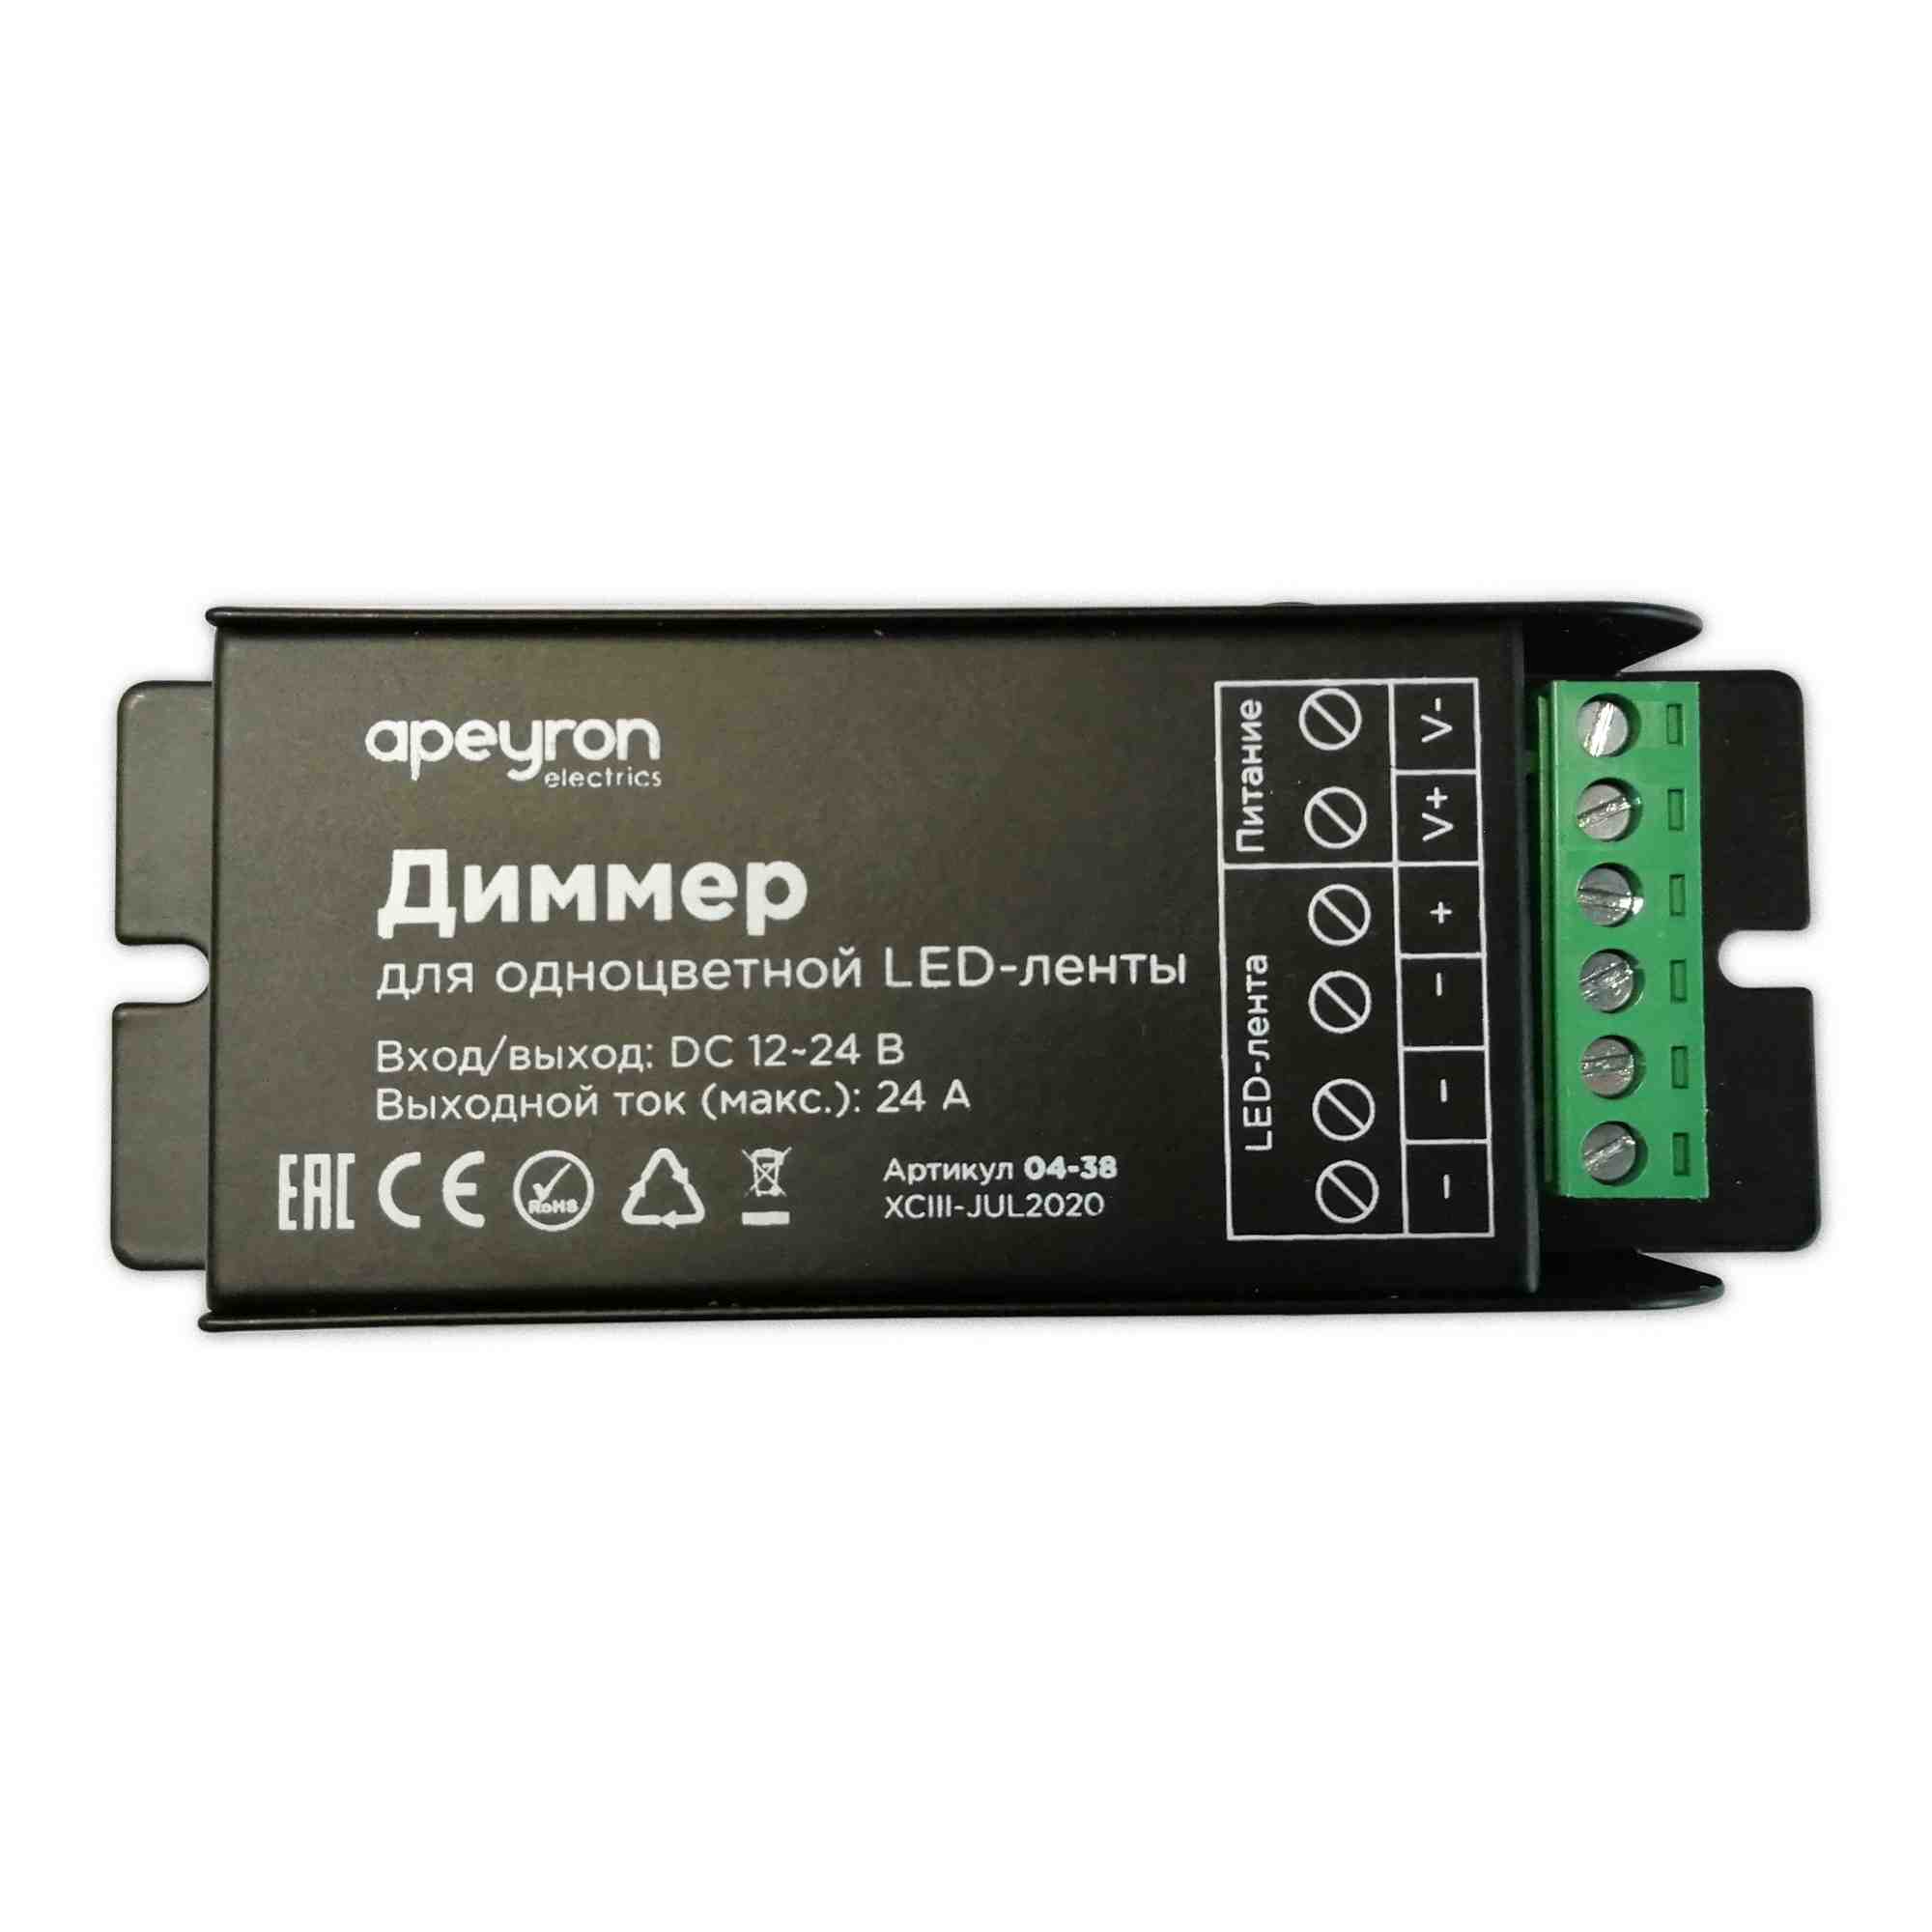 Диммер Apeyron 12/24В 288/576Вт 3 канала*8А IP20 пульт easy control радио 04-38 в Москве